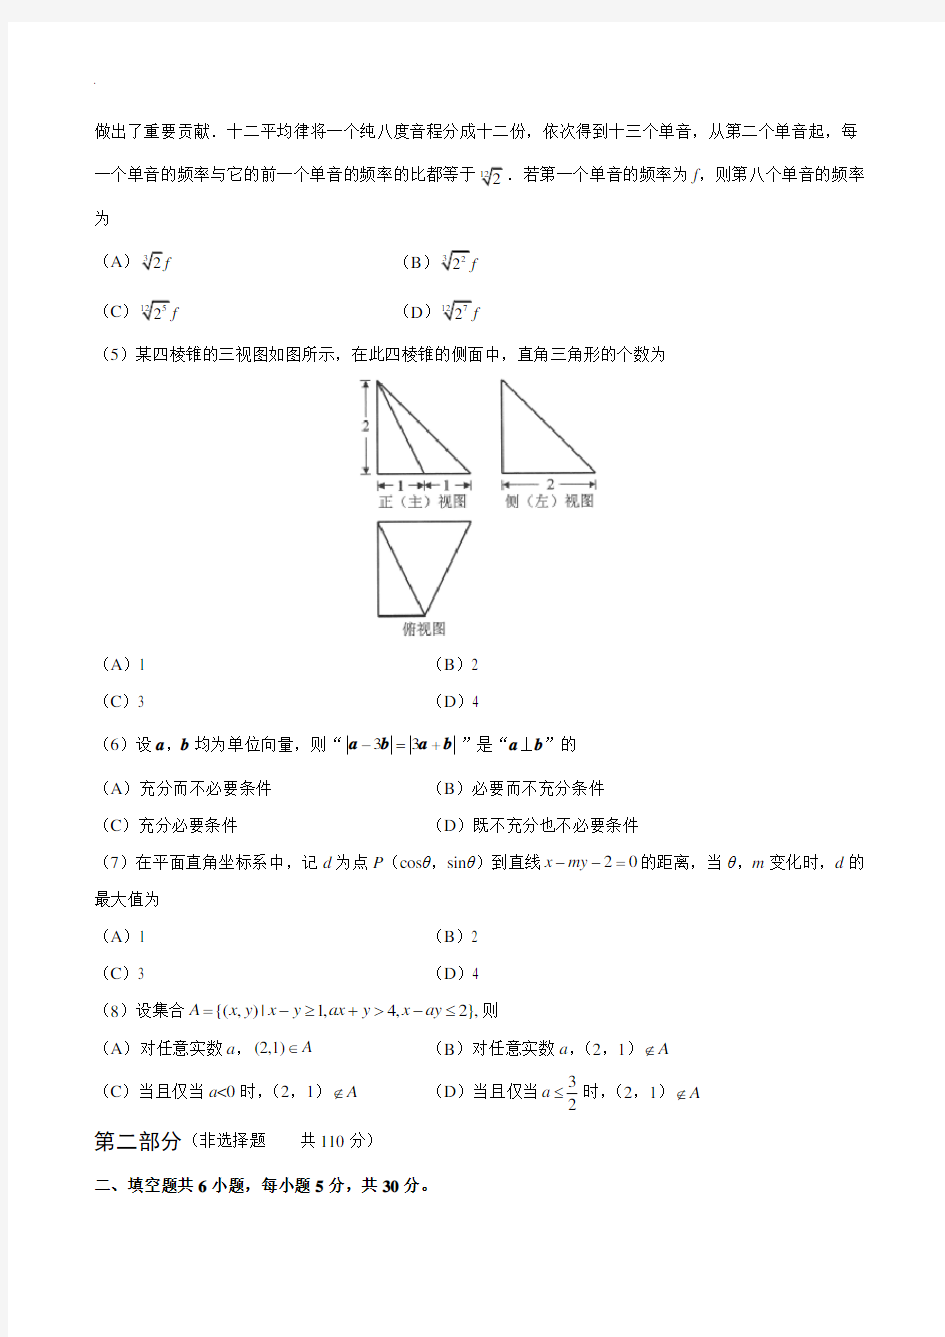 2018年度高考北京卷理科数学(含内容规范标准答案)